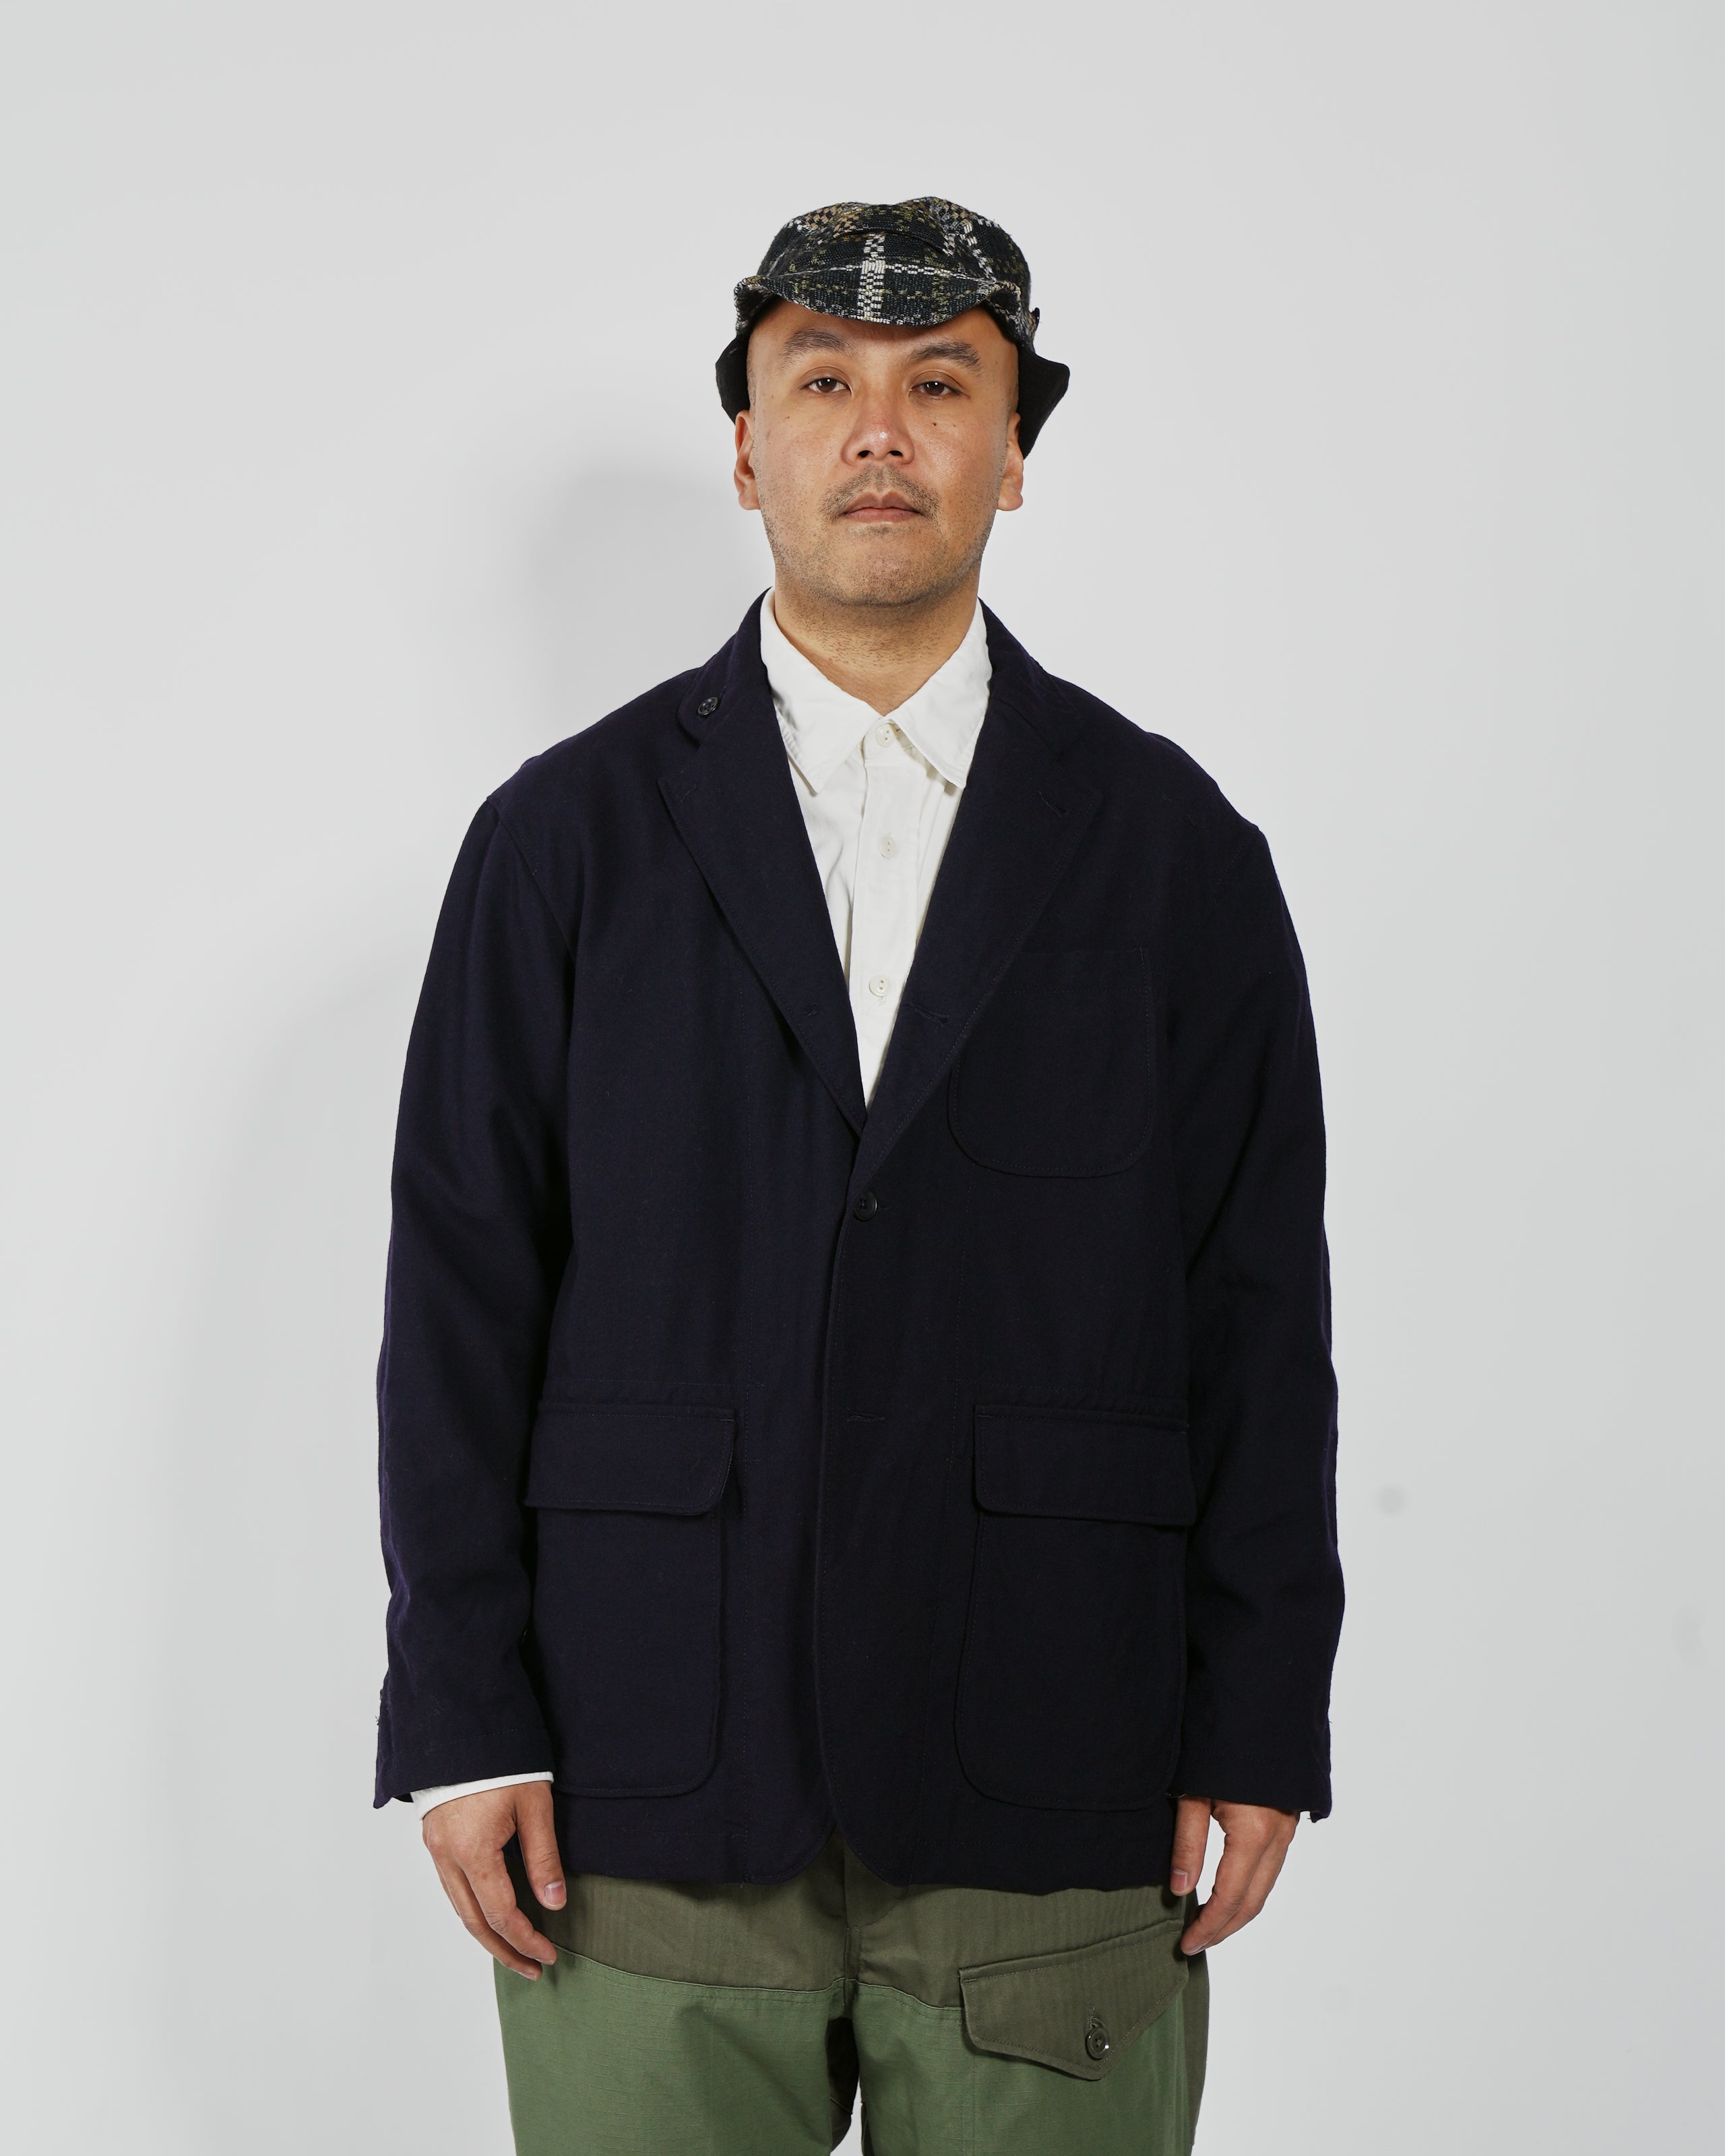 Loiter Jacket - Dark Navy Wool Uniform Serge